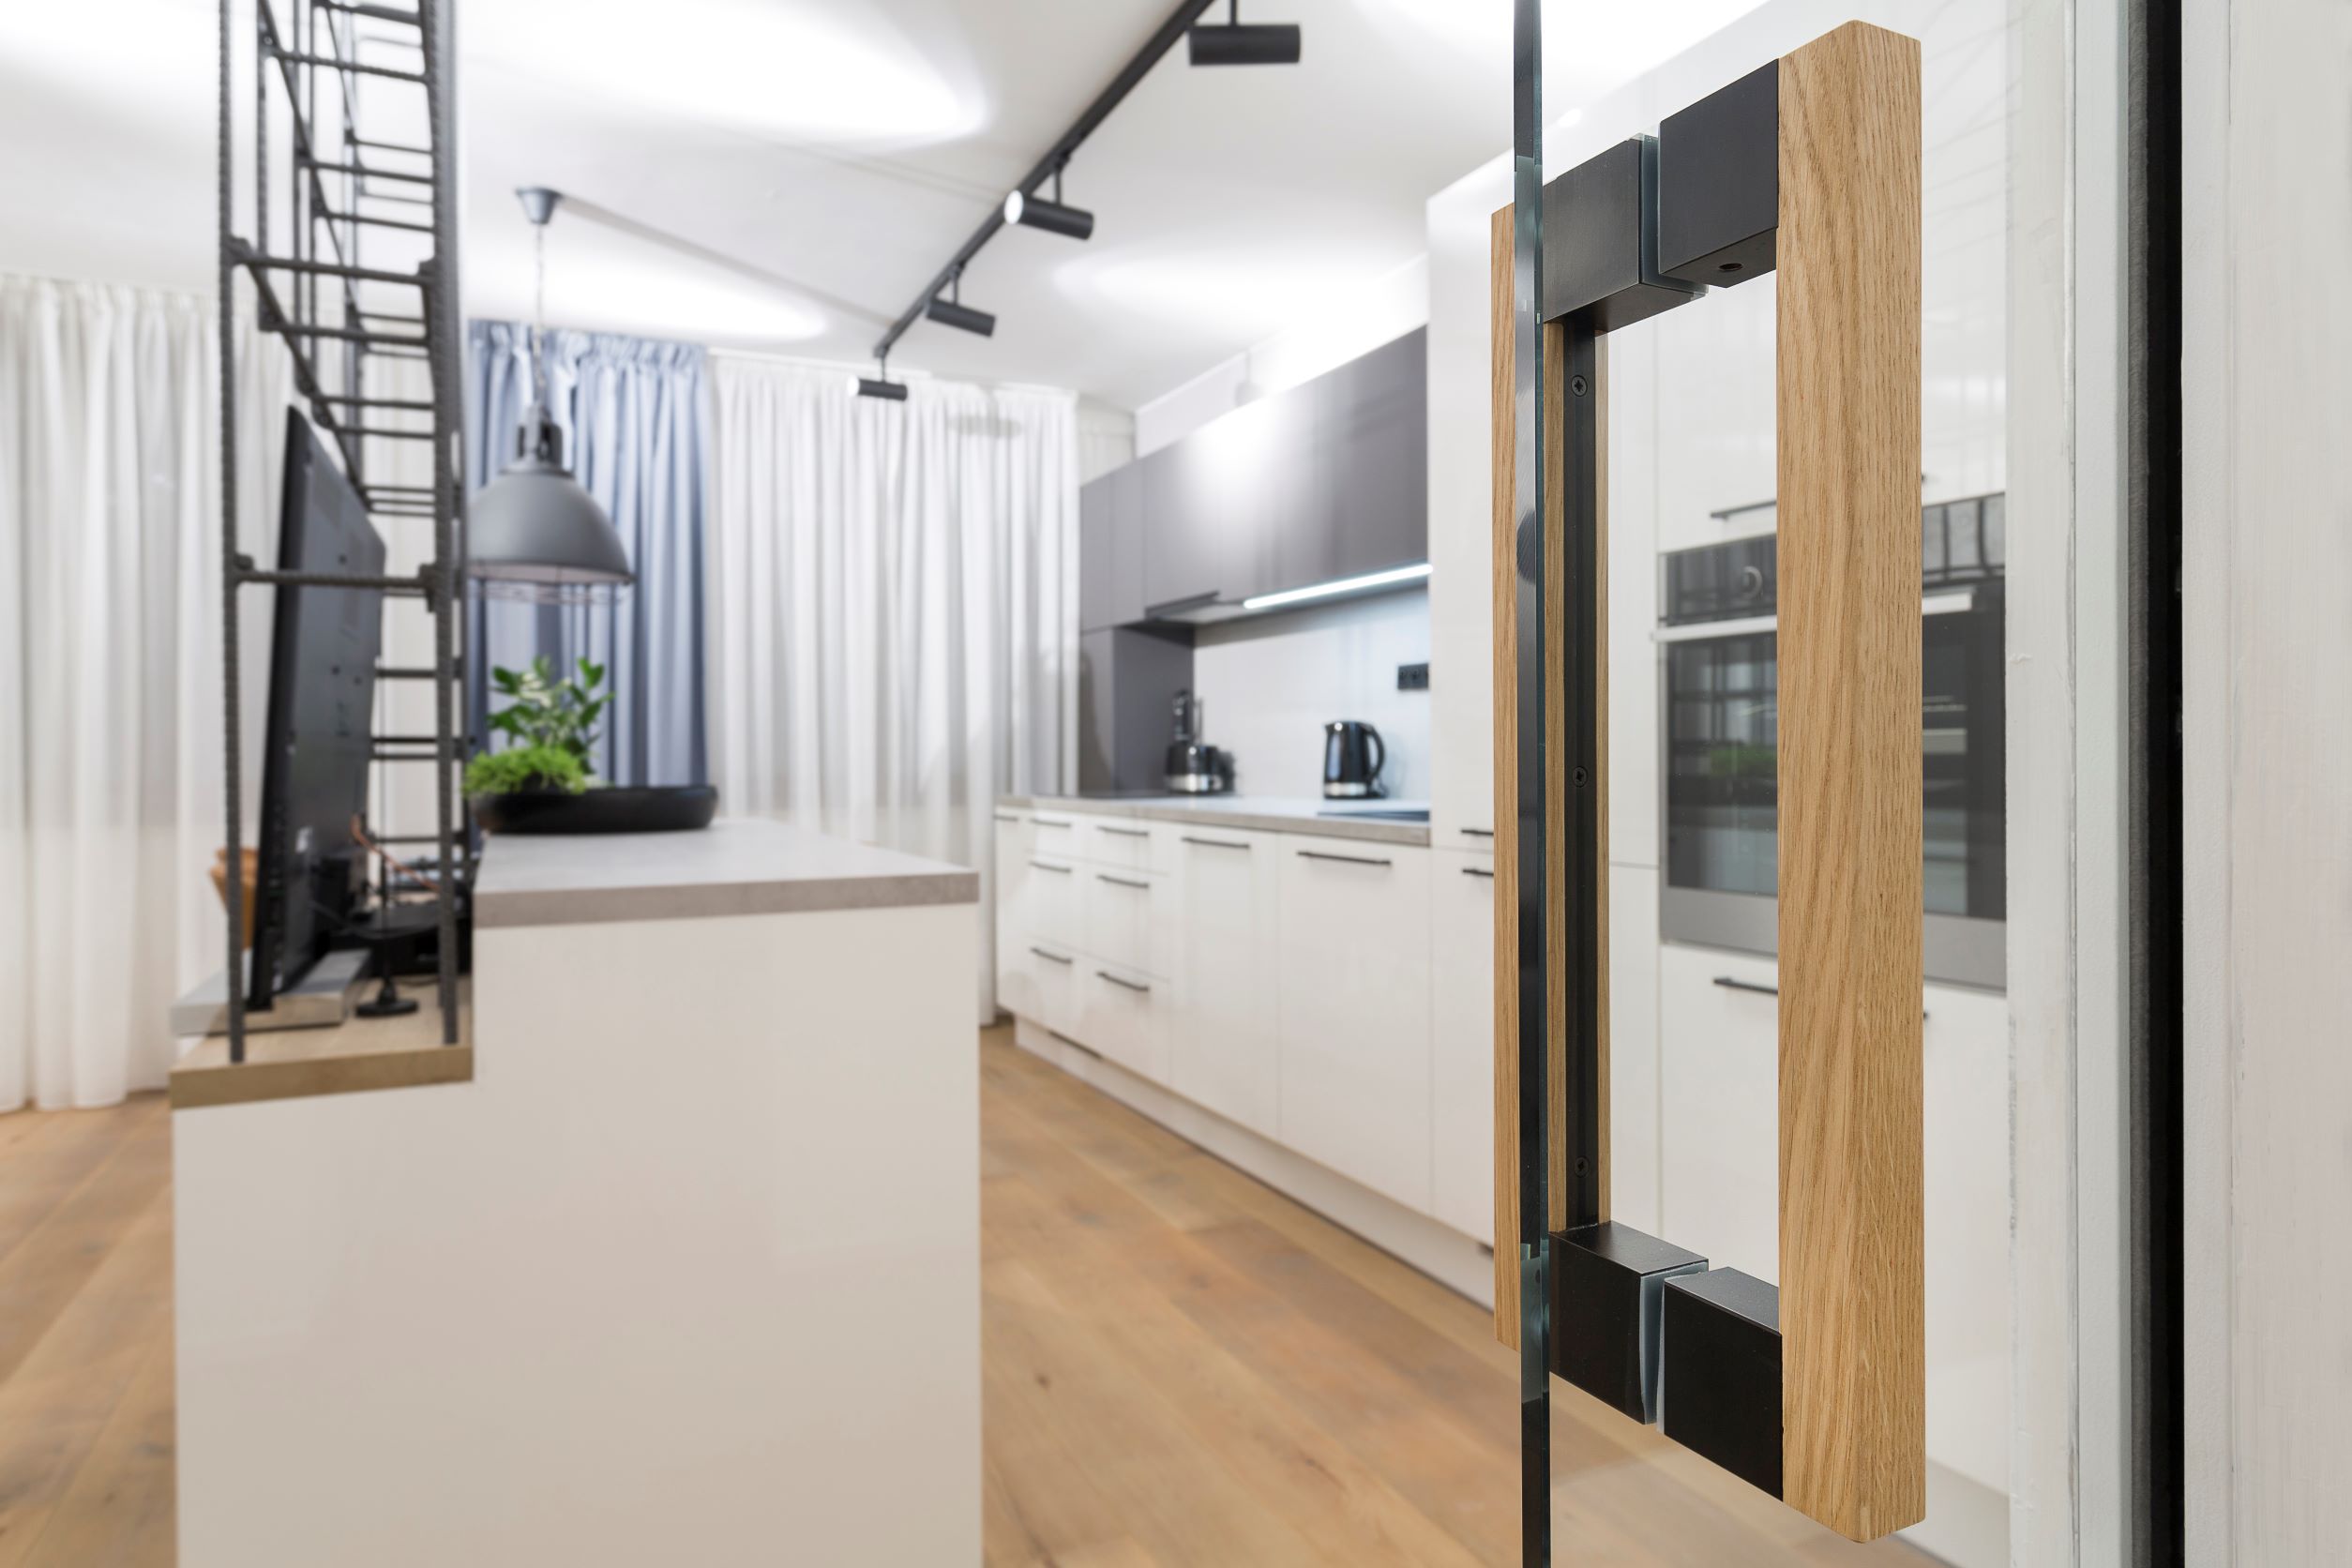 Interiérové dveře celoskleněné posuvné do pouzdra detail dřevěného kování v kuchyni 